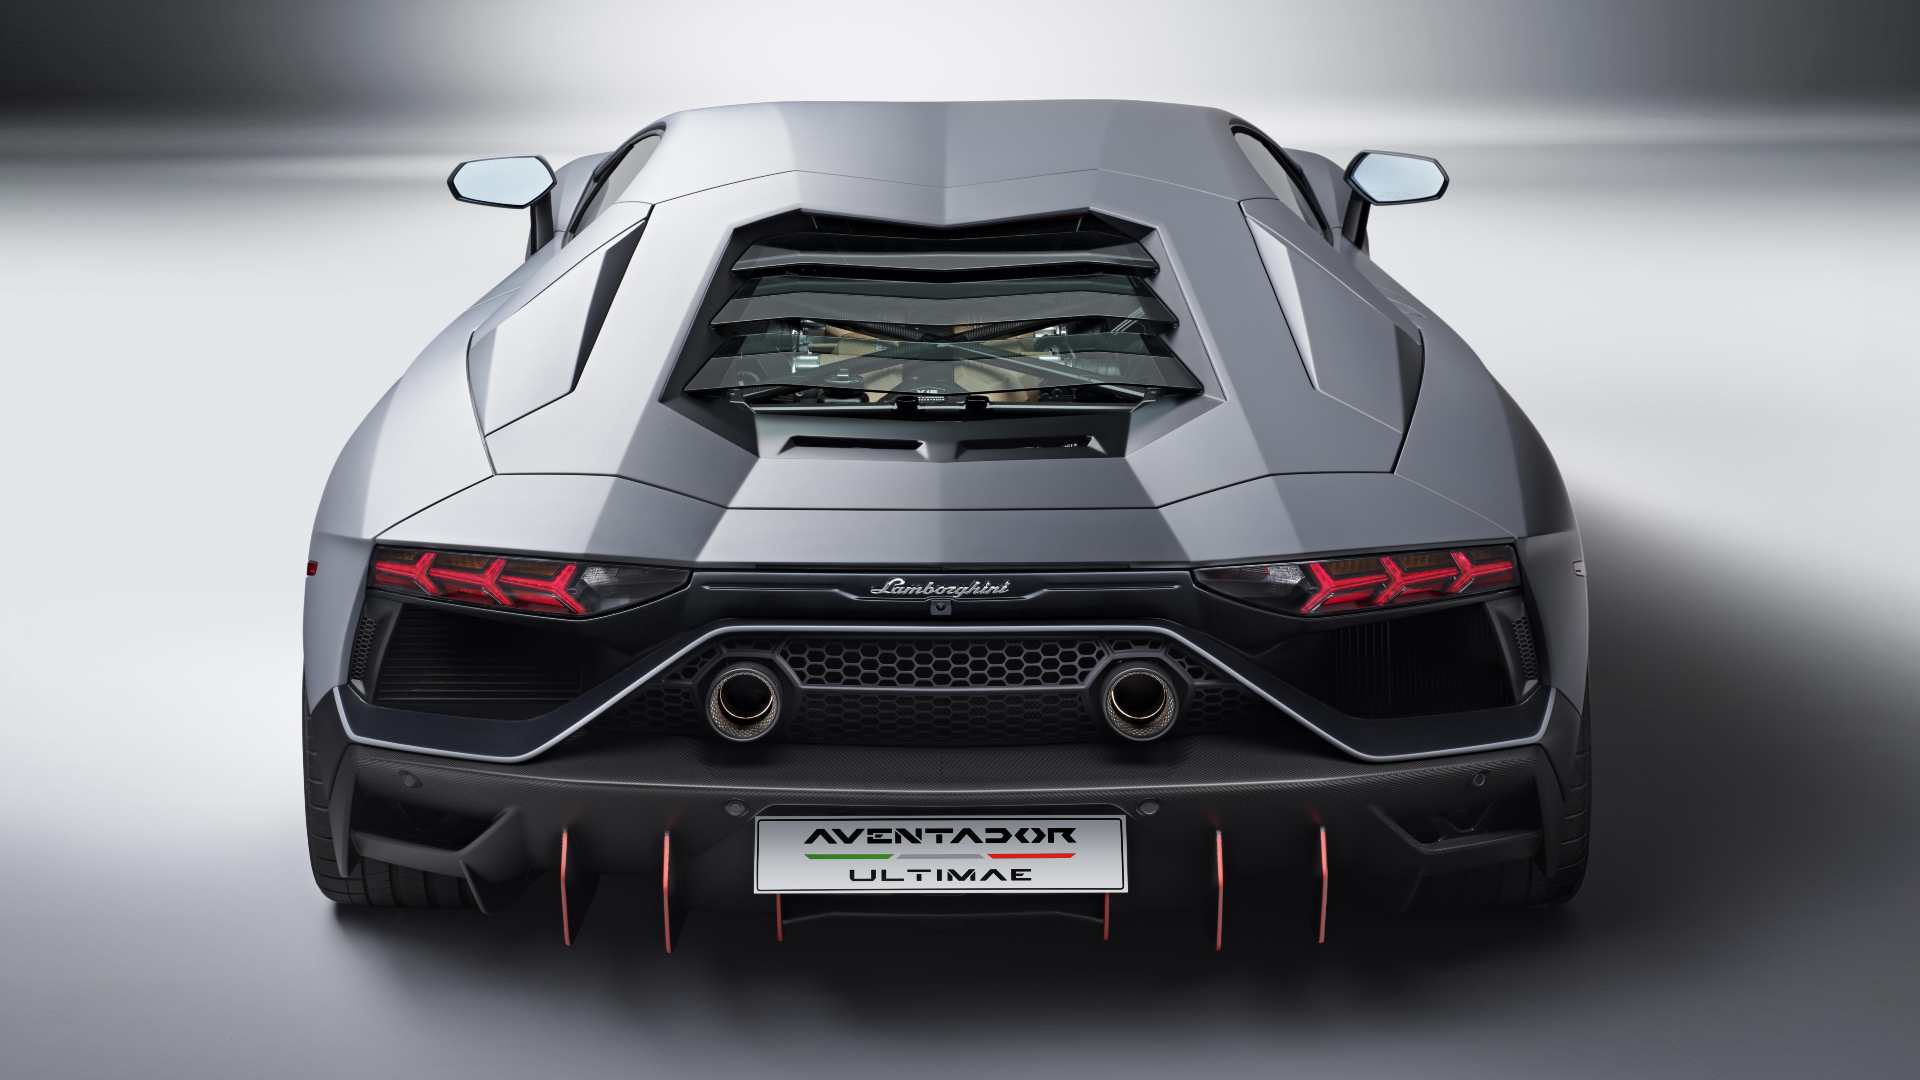 The Lamborghini Aventador Ultimae can do 0-100 kph in 2.8 seconds. Image: Lamborghini